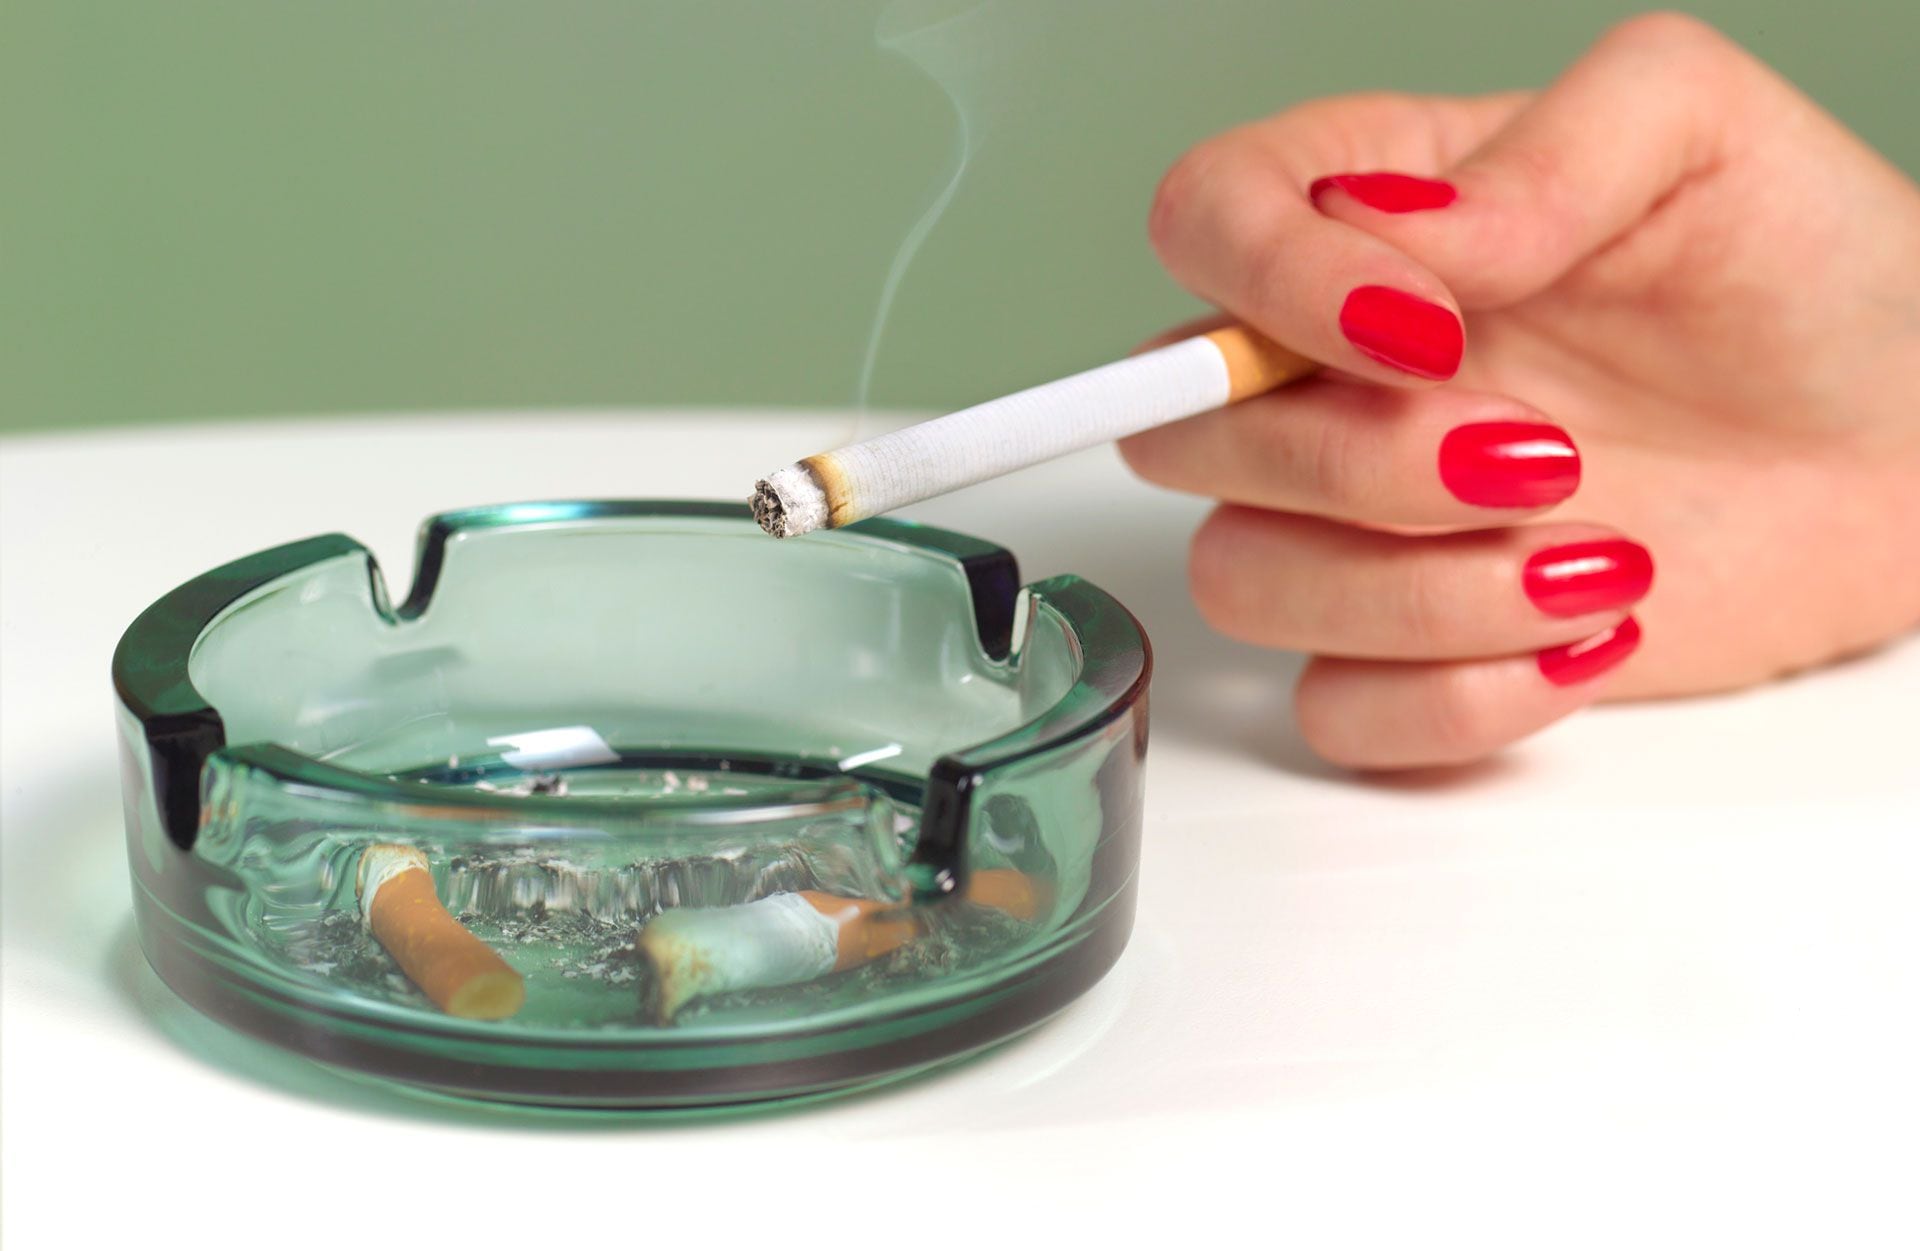 El tabaquismo es más alto en los hombres, según los autores. No obstante, los resultados mostraron mayor incidencia del cáncer de pulmón en las mujeres (Getty)